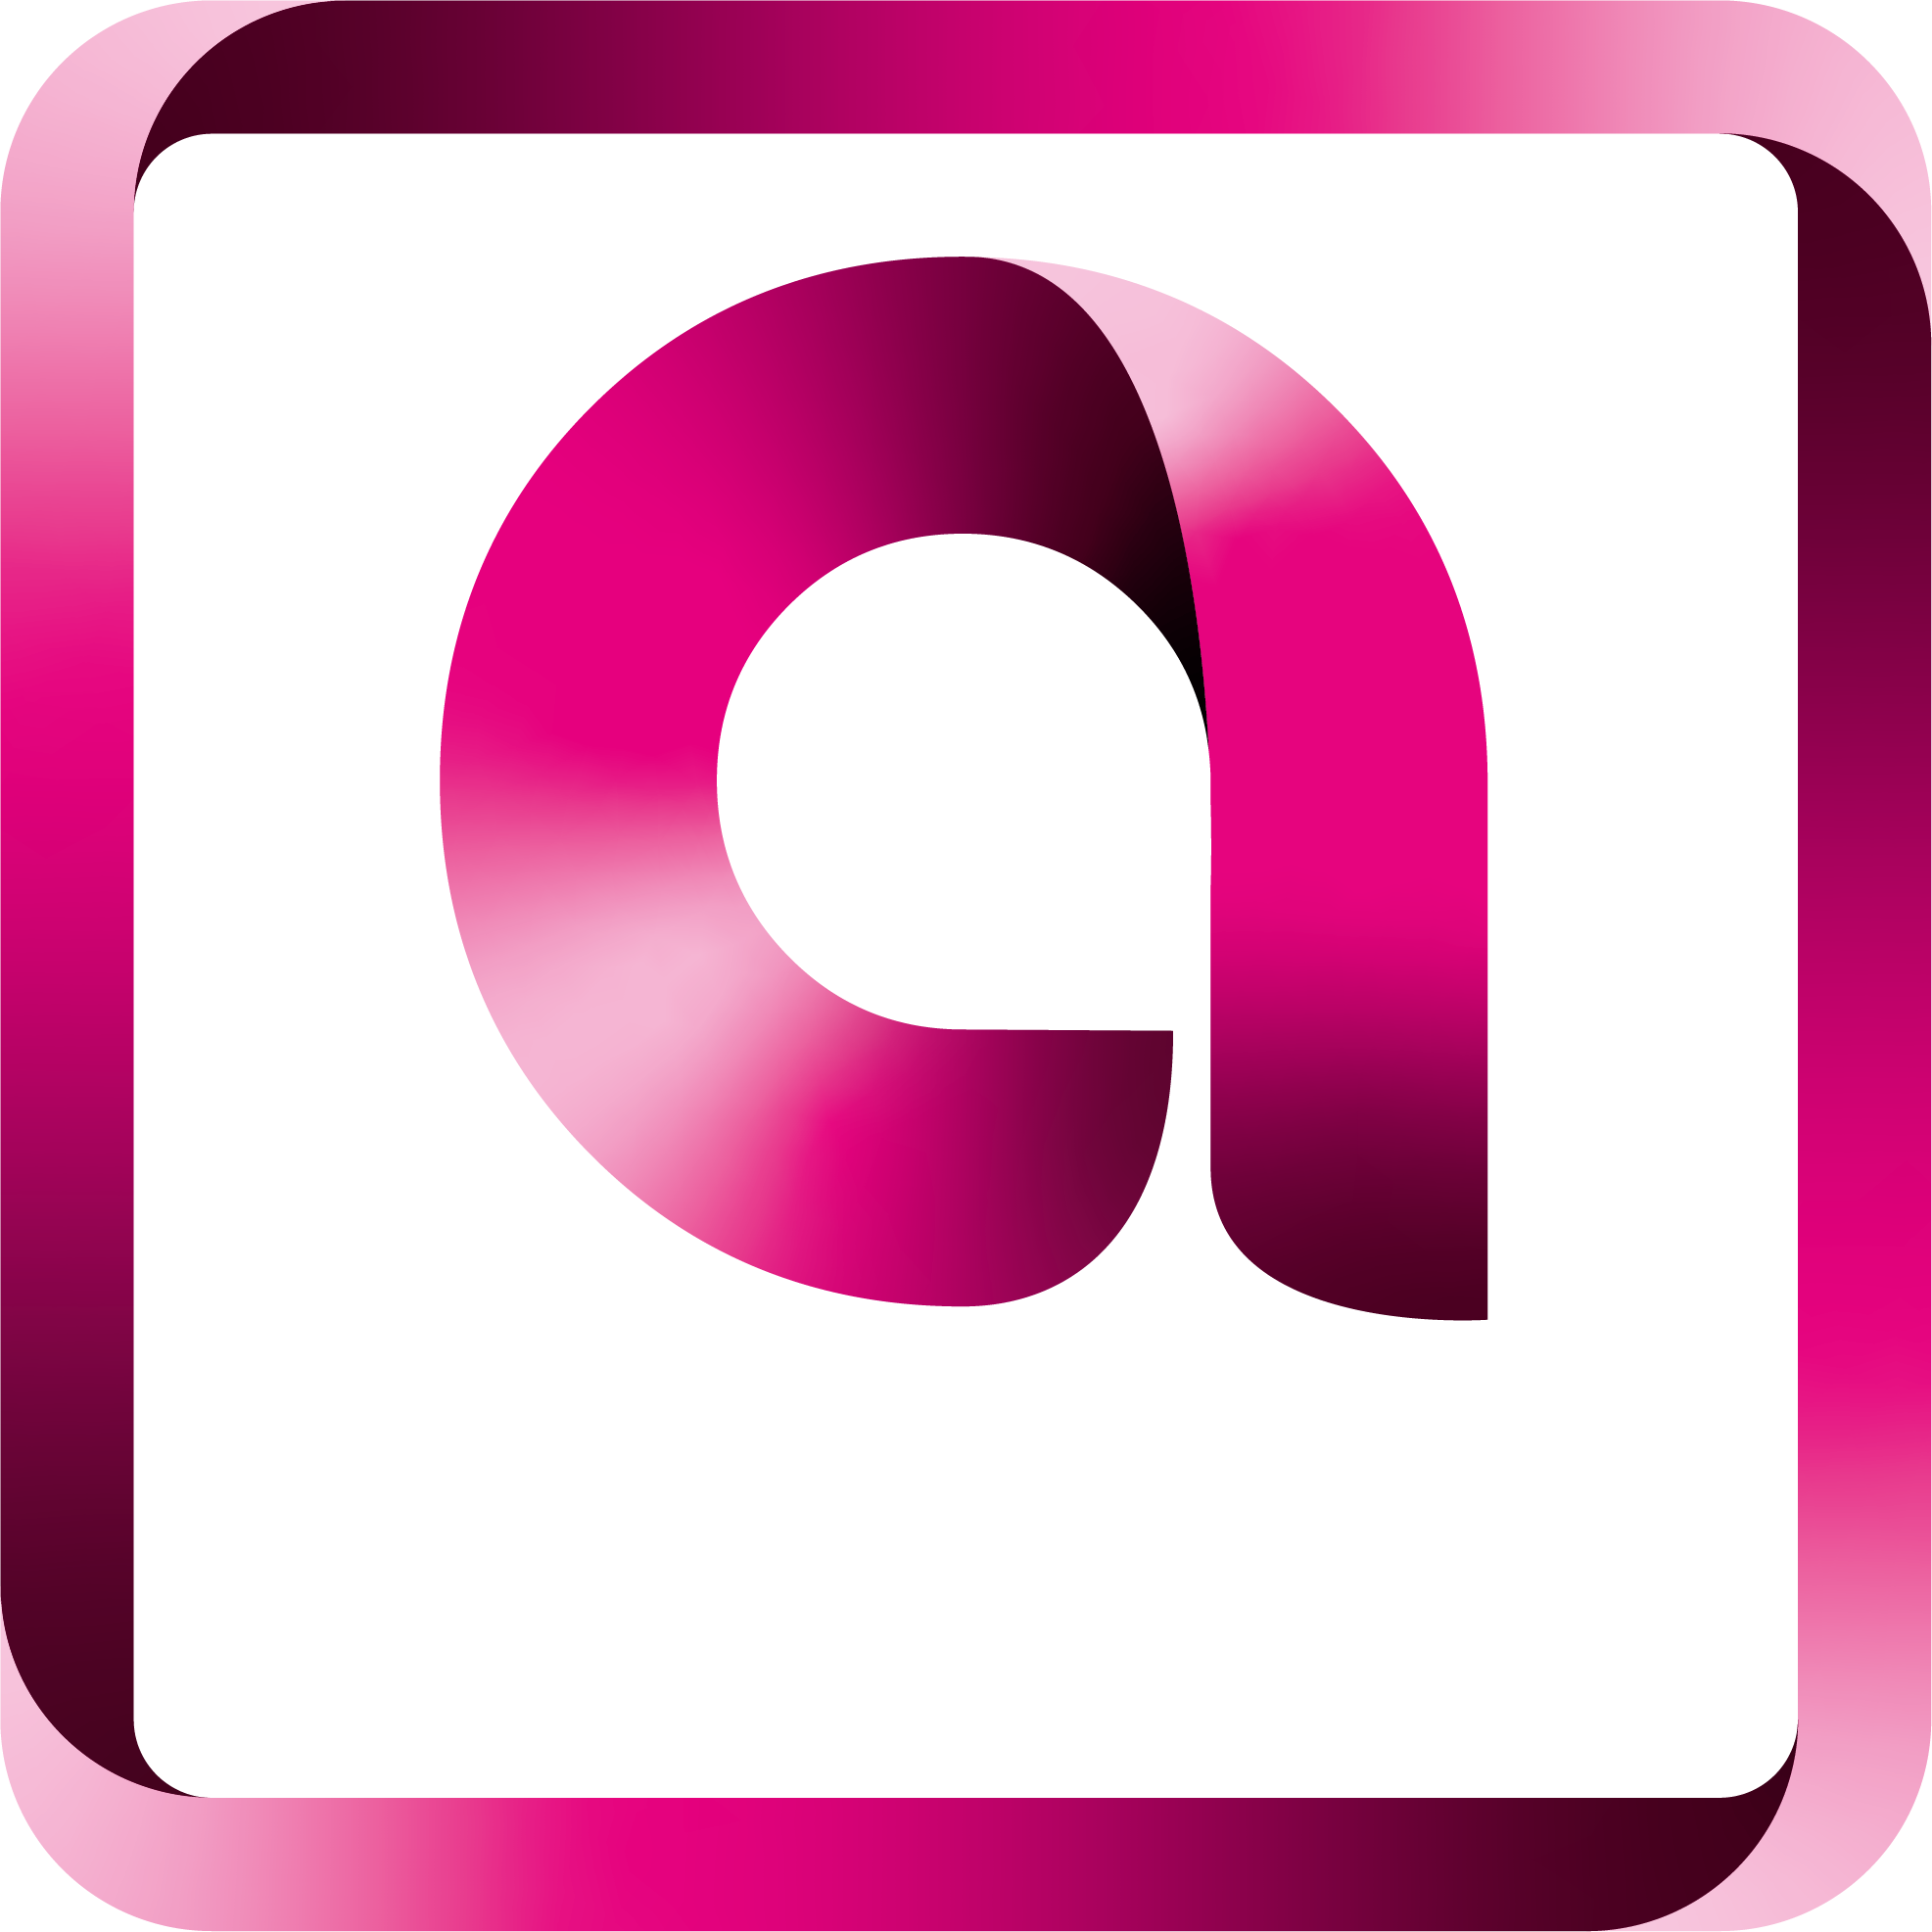  An Avel